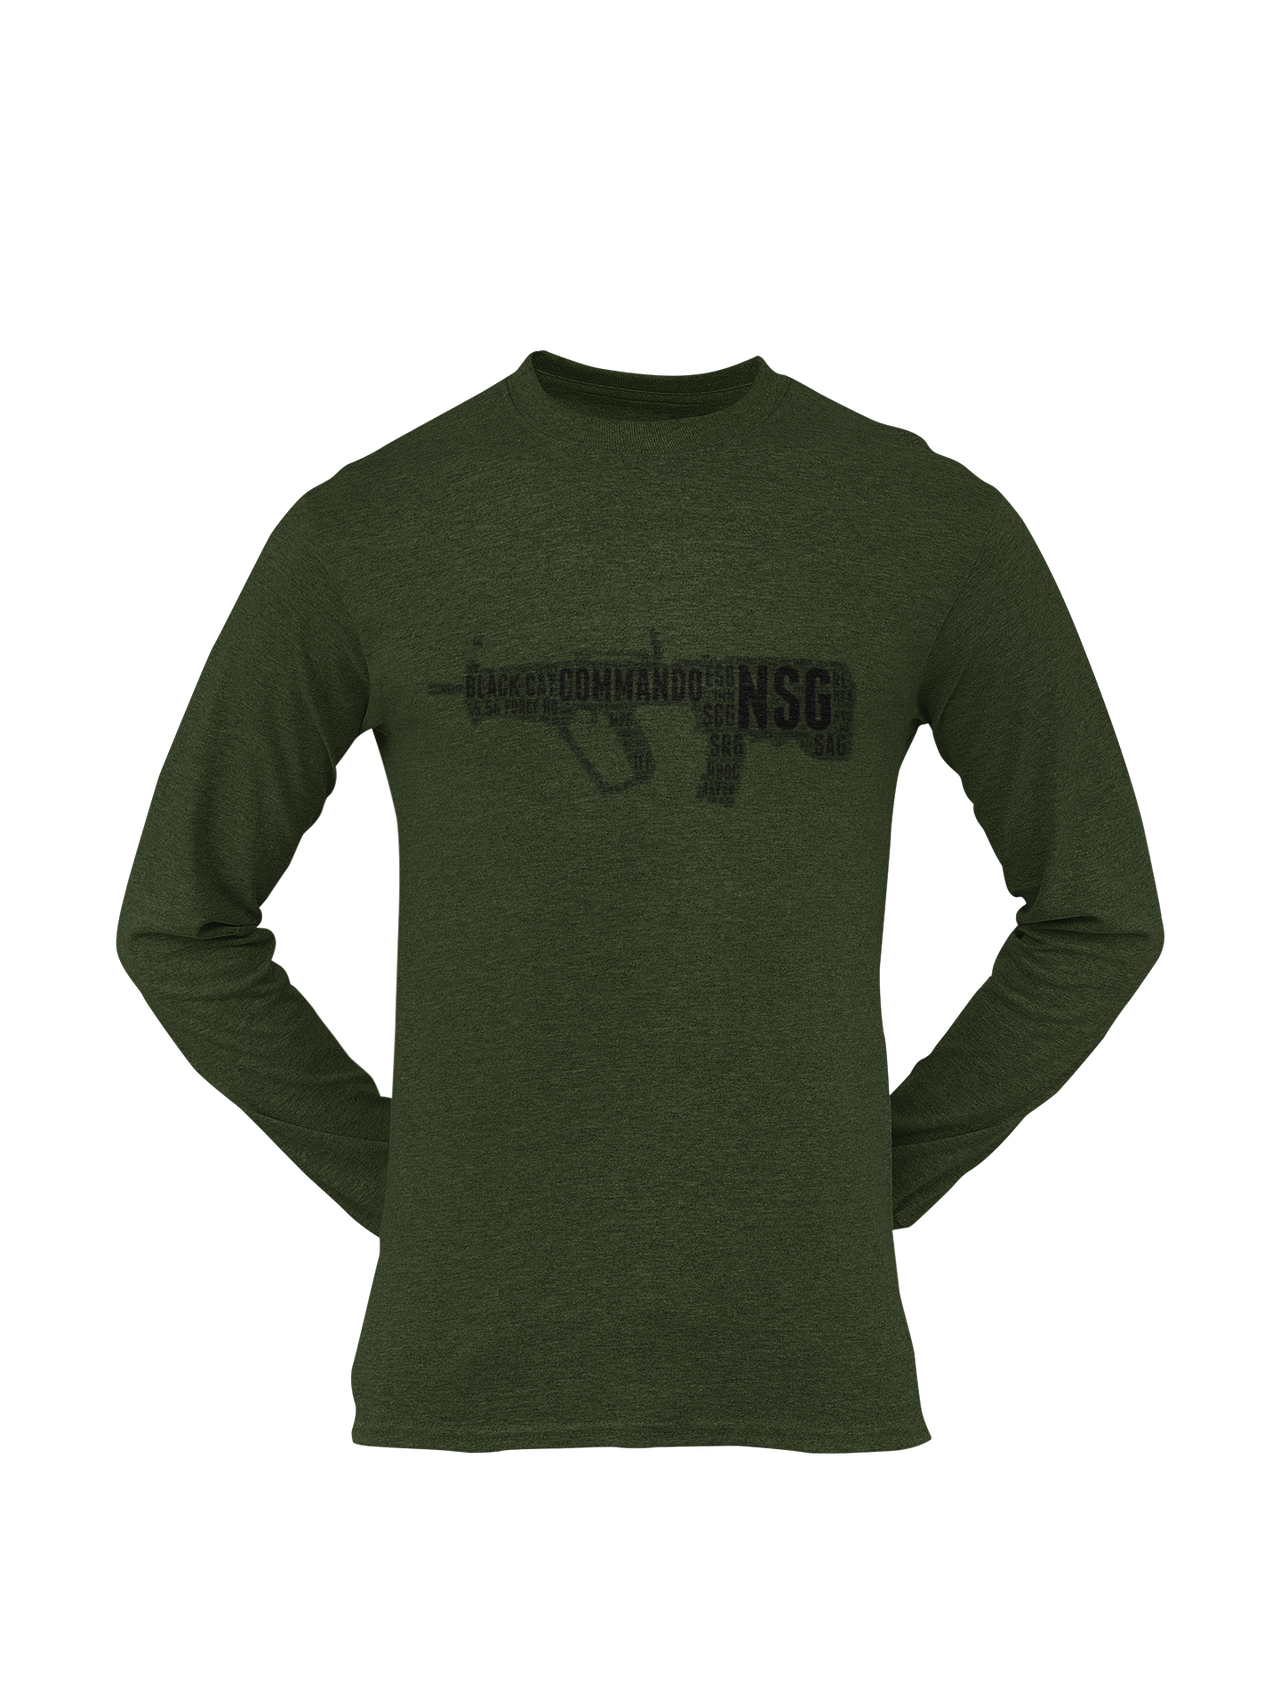 NSG T-shirt - NSG - Tavor (Men)